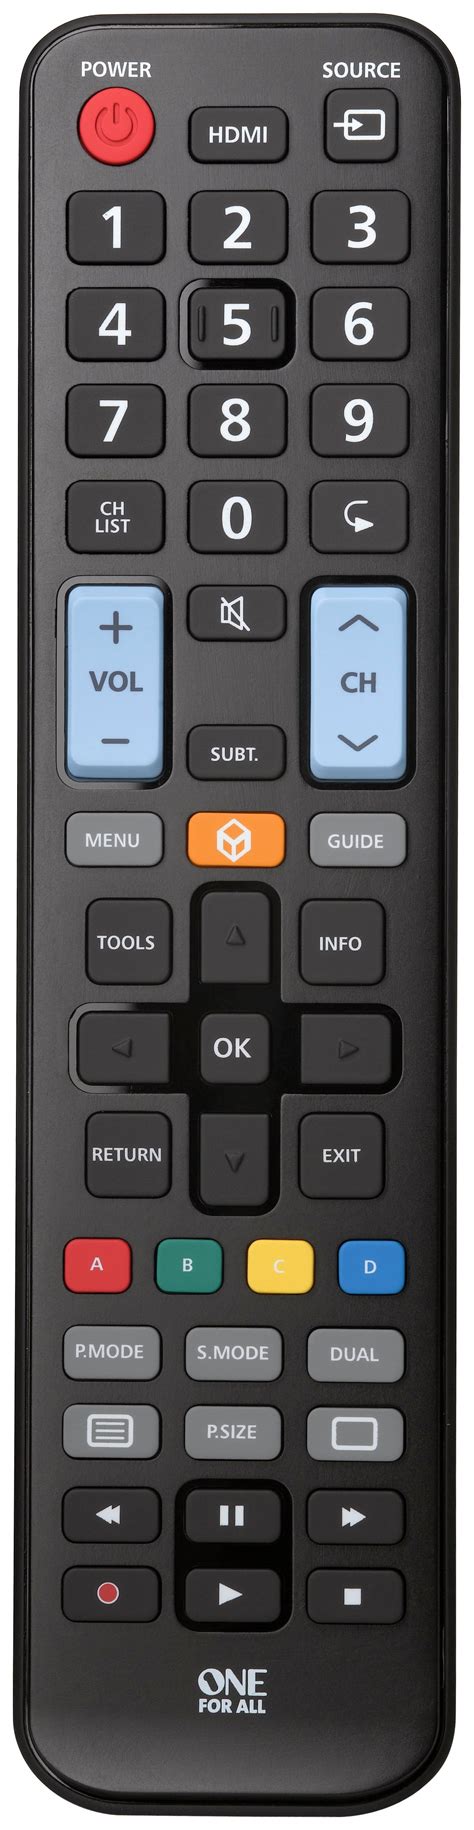 samsung remote control reviews